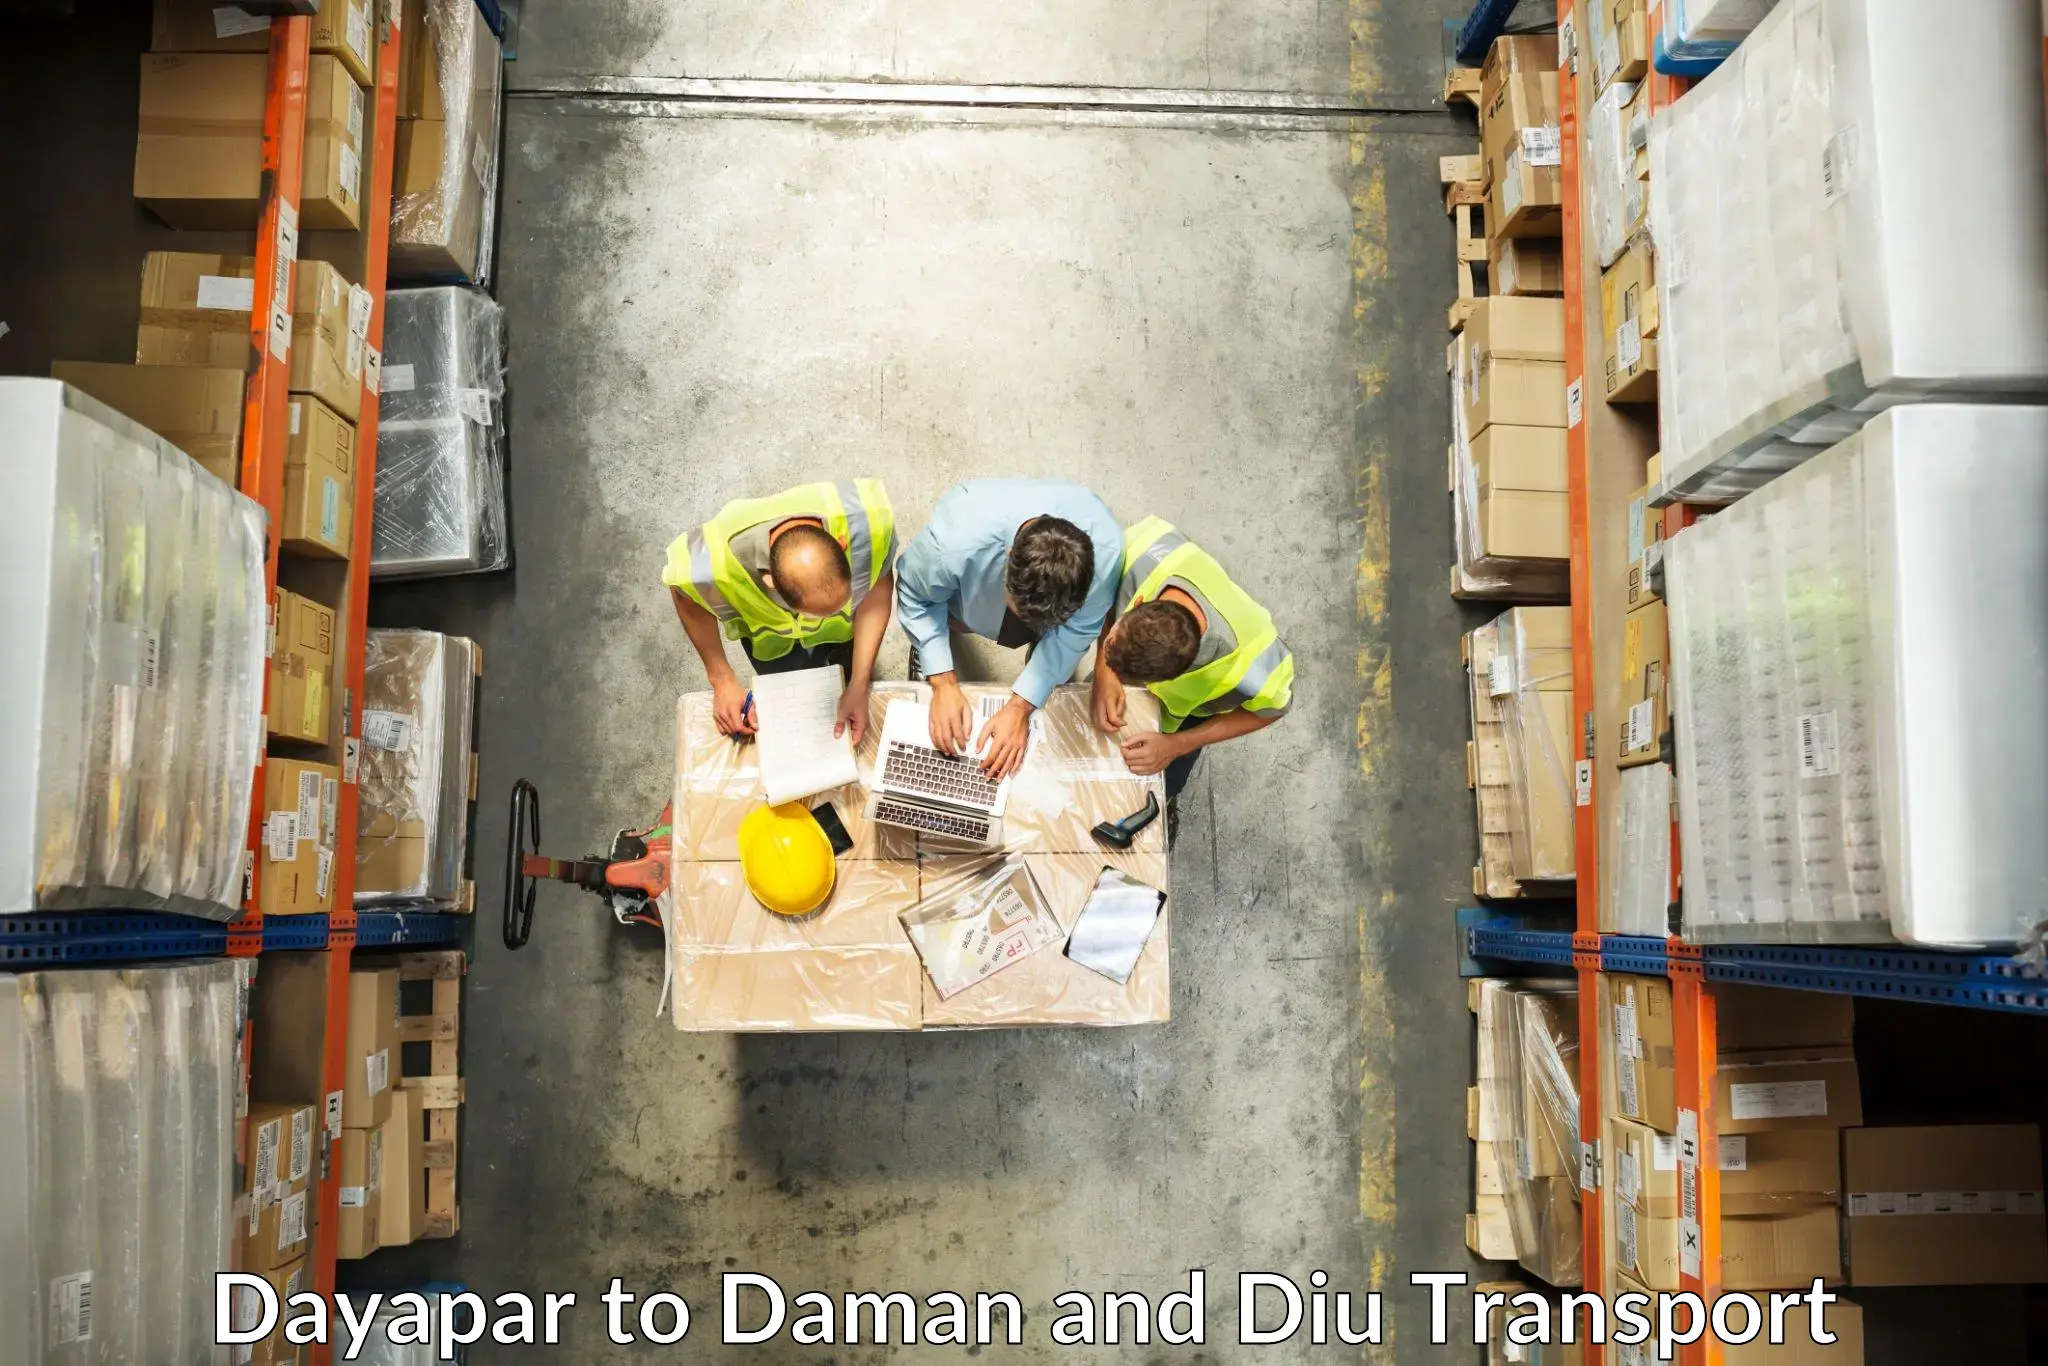 Air freight transport services Dayapar to Daman and Diu